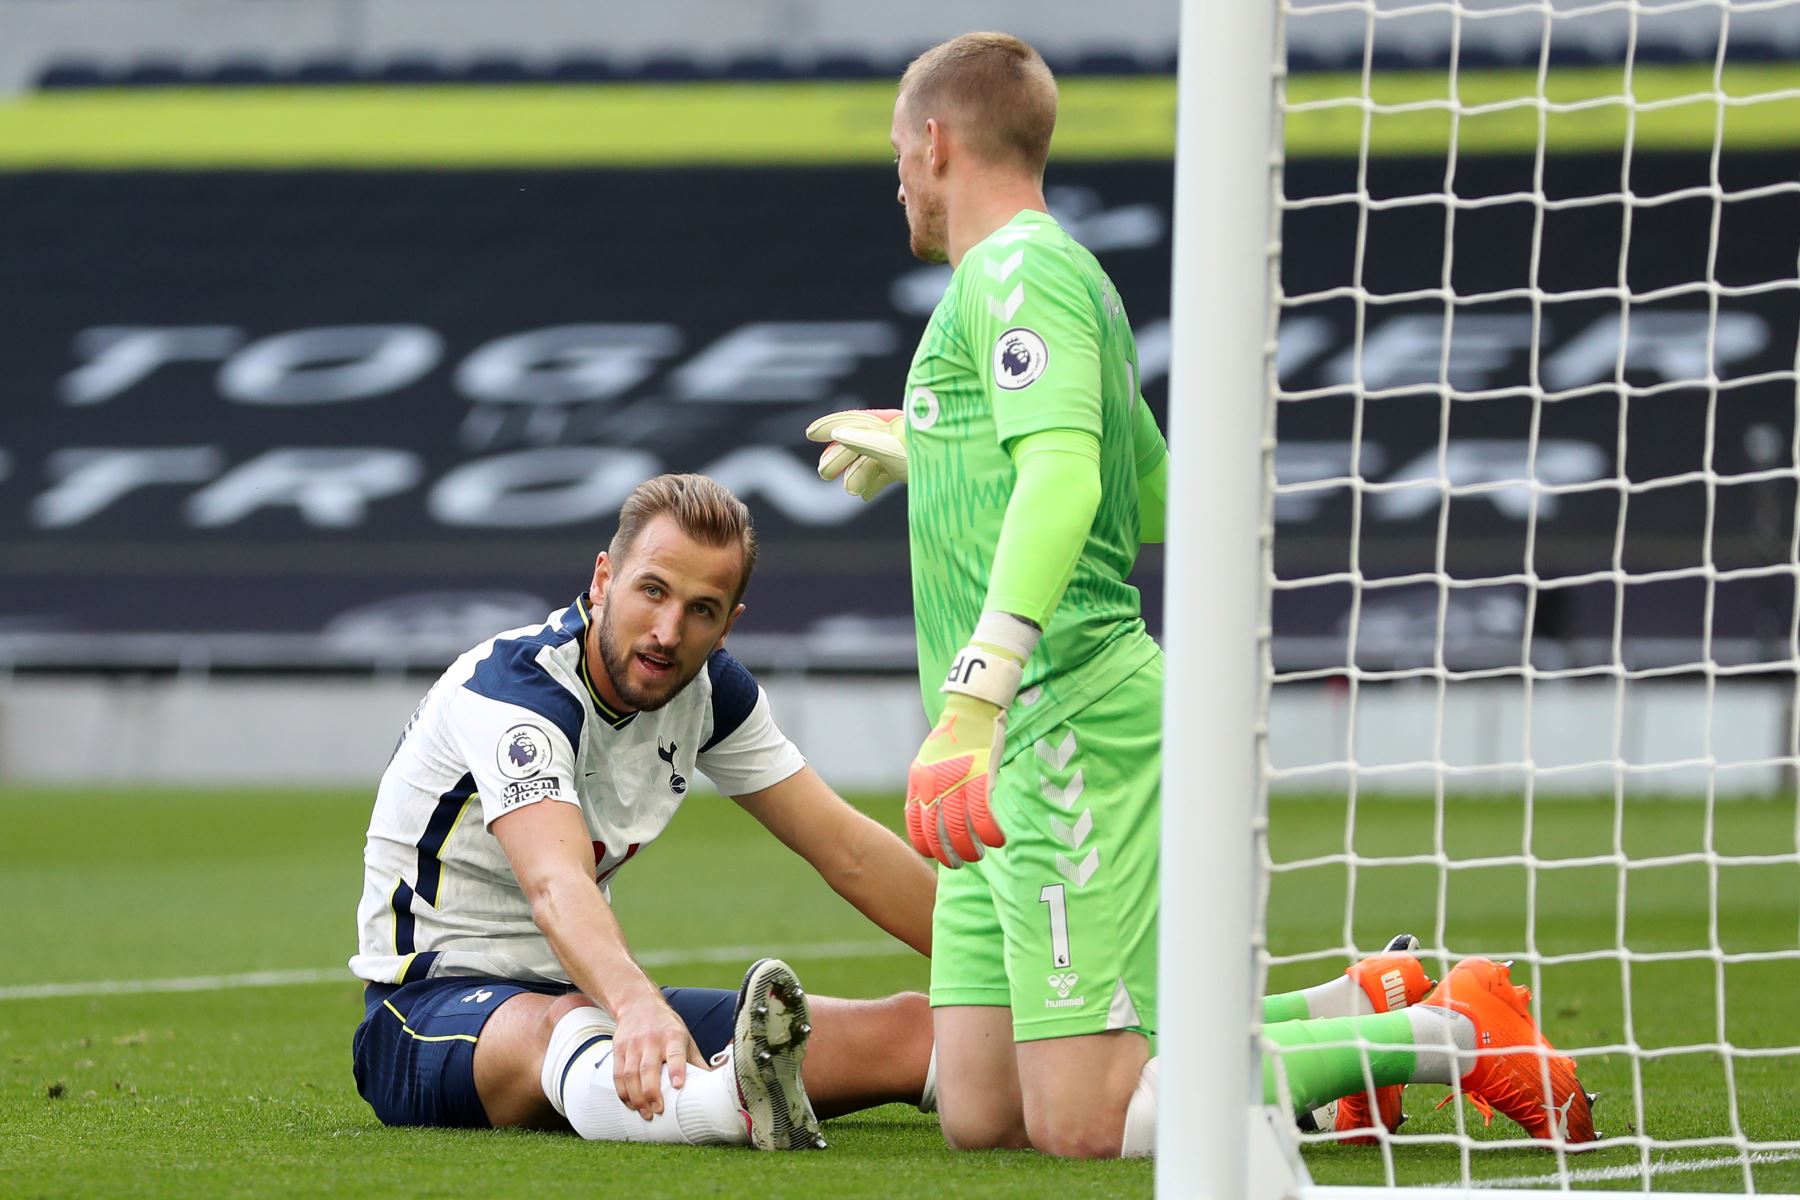 El delantero inglés del Tottenham Hotspur, Harry Kane, reacciona ante una oportunidad perdida durante el partido de fútbol de la Premier League. Foto: AFP